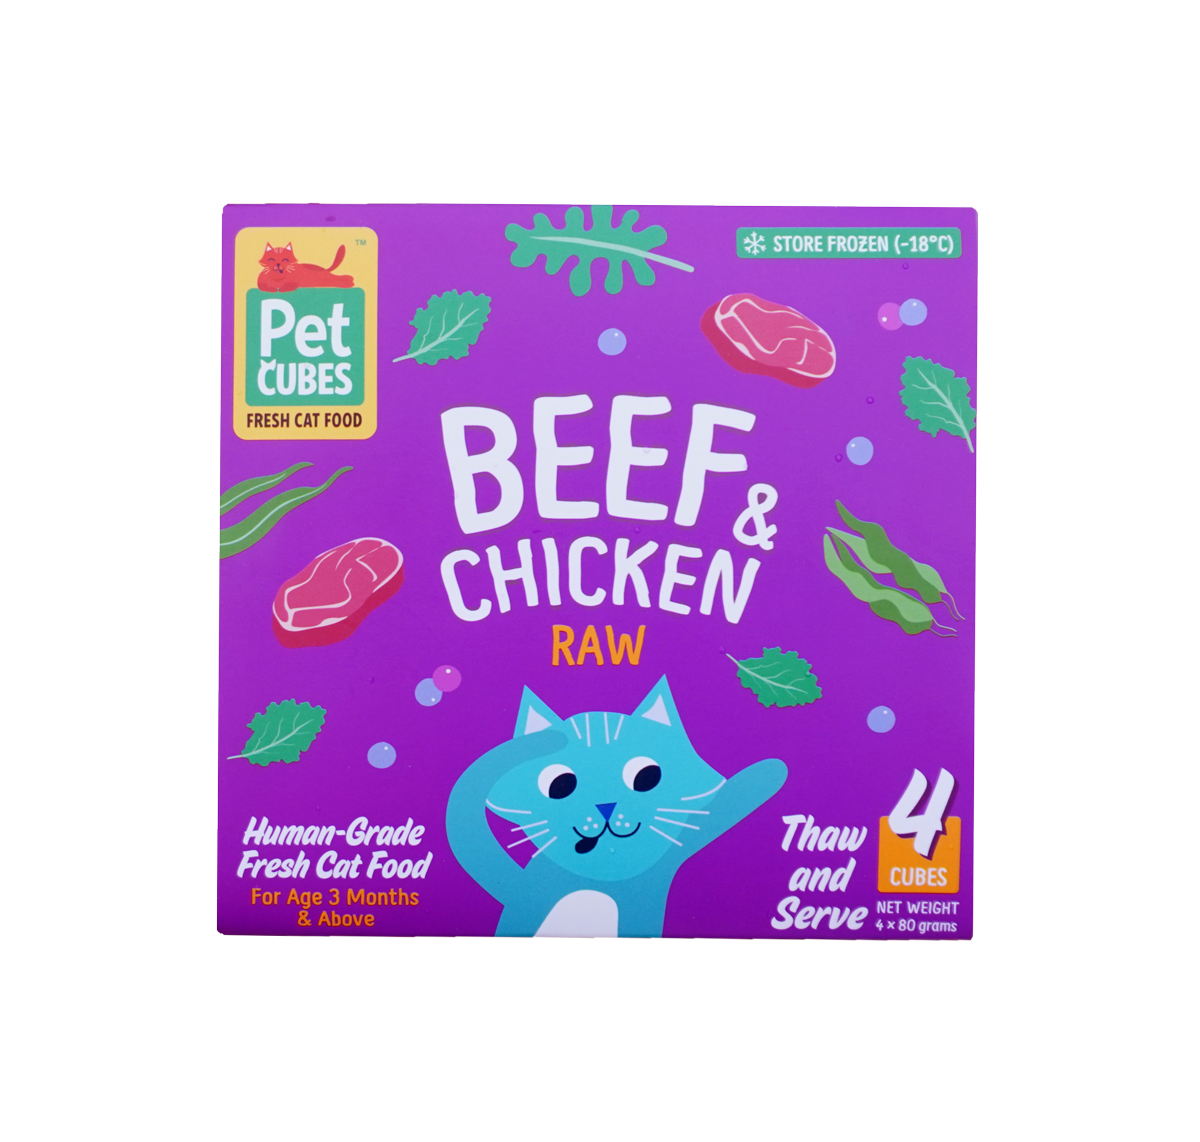 PetCubes Frozen Raw Cat Food - Beef & Chicken